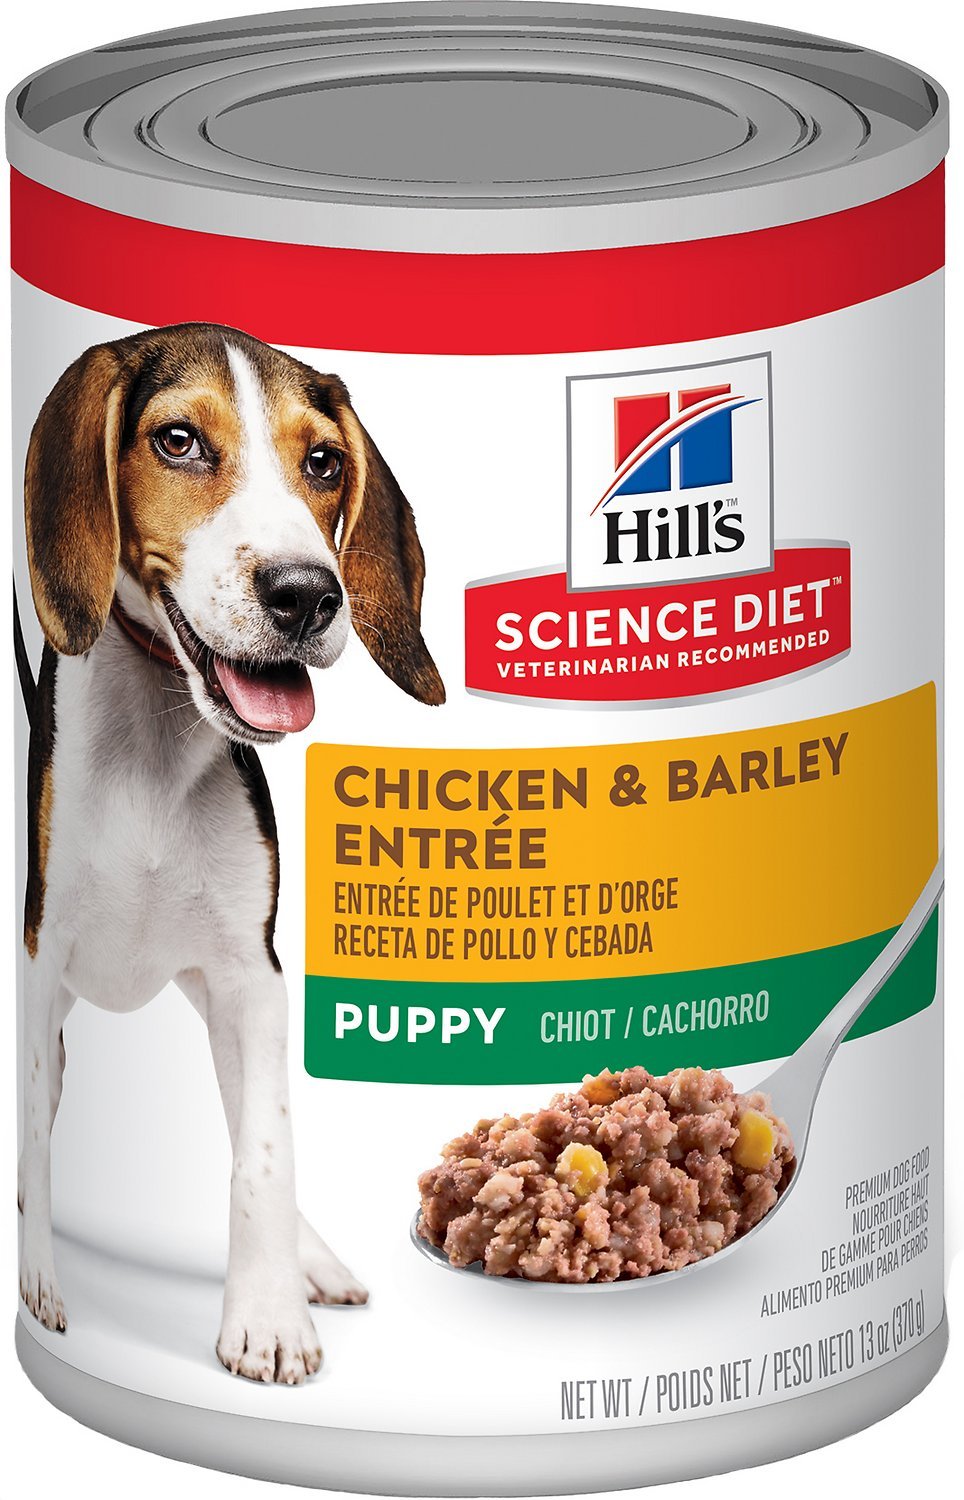 Science Diet Dog Food, Premium, Ground, Chicken & Barley Entree, Adult (1-6) - 13 oz